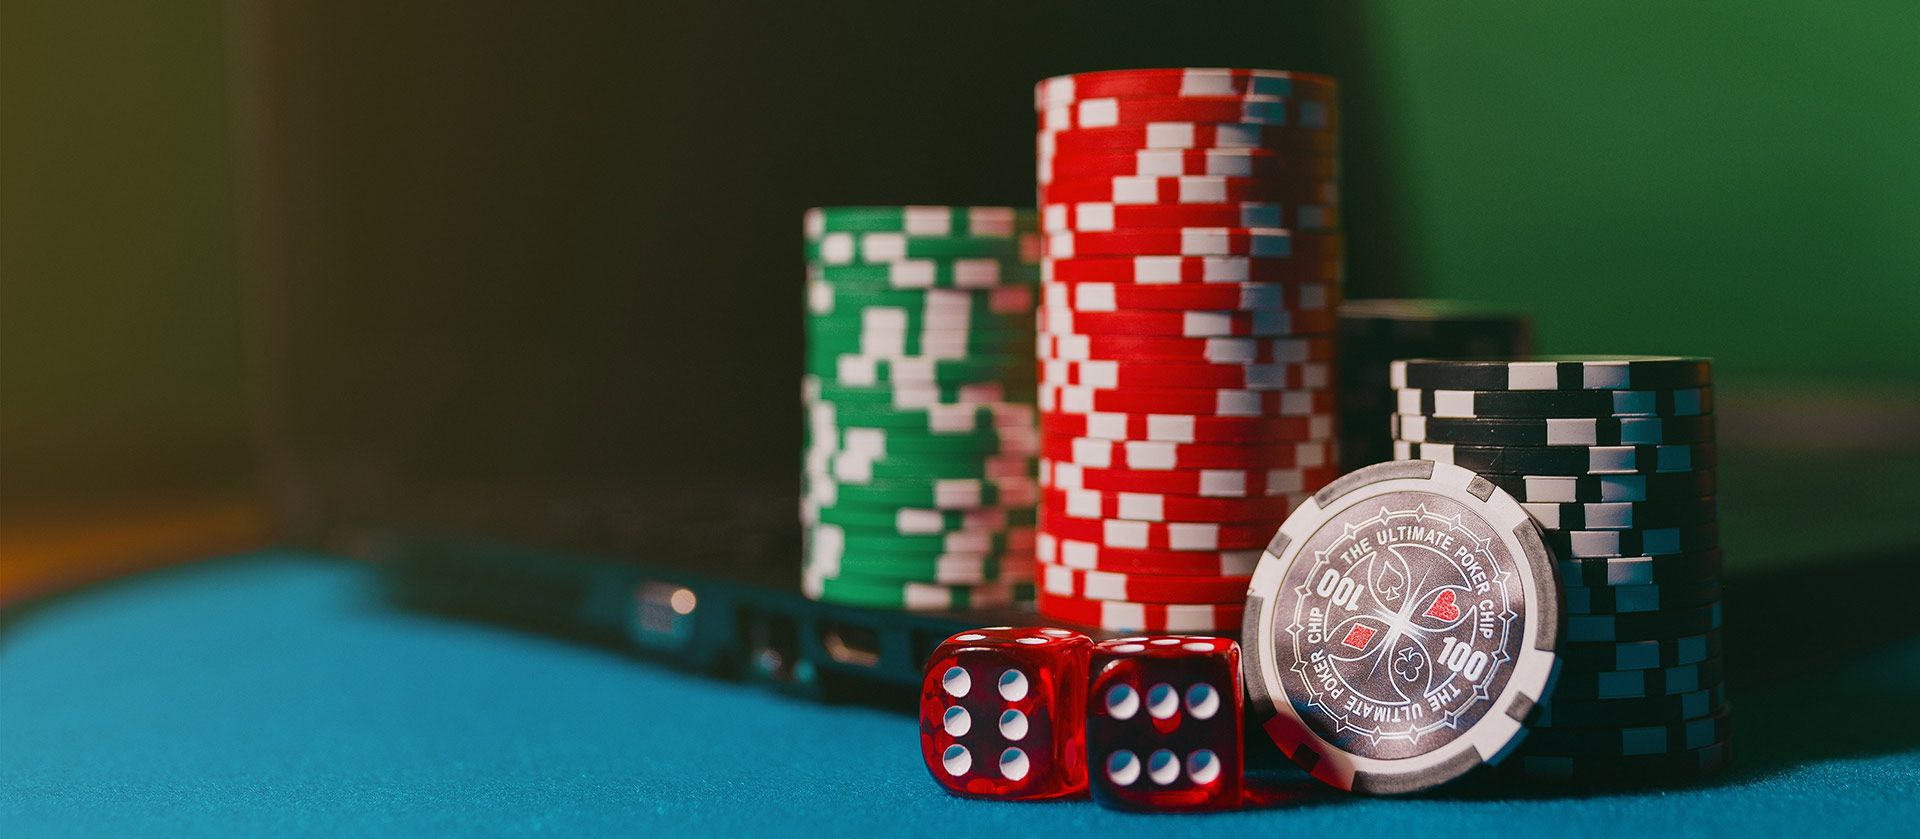 Blackjack and craps in legit online casinos.